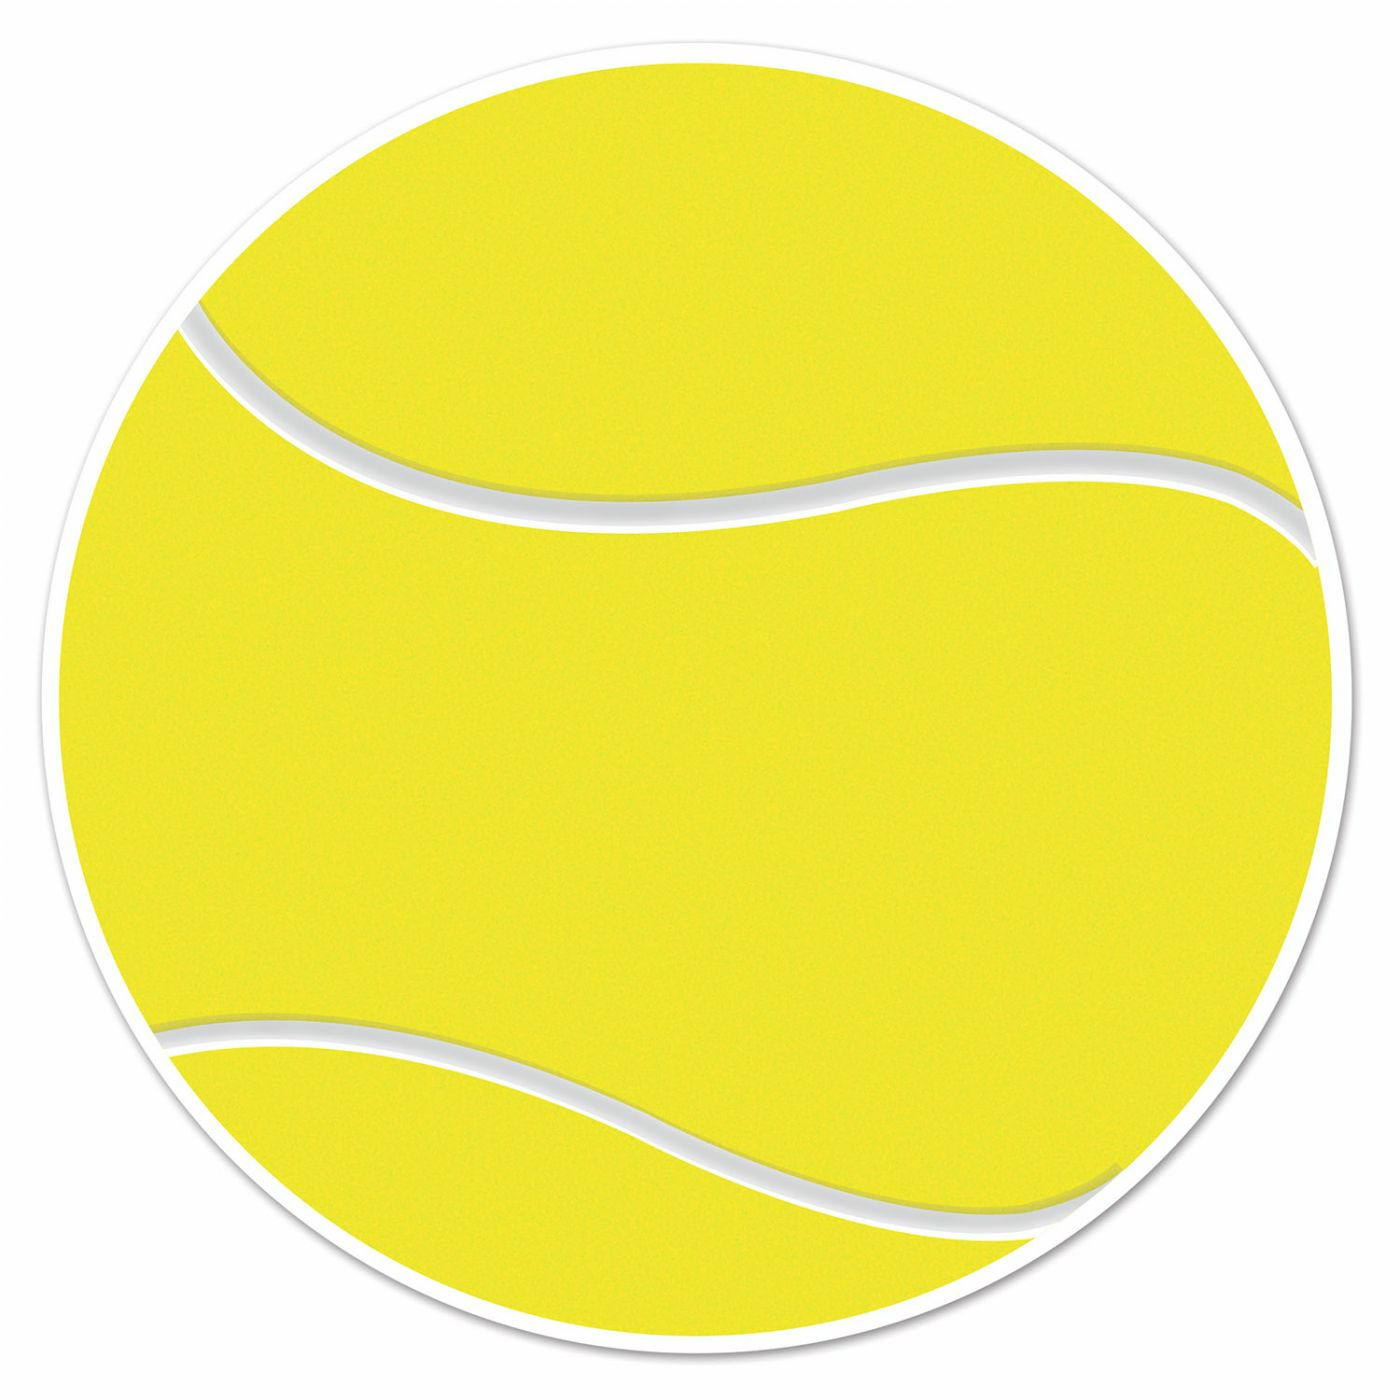 Tennisbal sport decoratie sticker versiering geel dia 13 cm vinyl Tennis feest thema